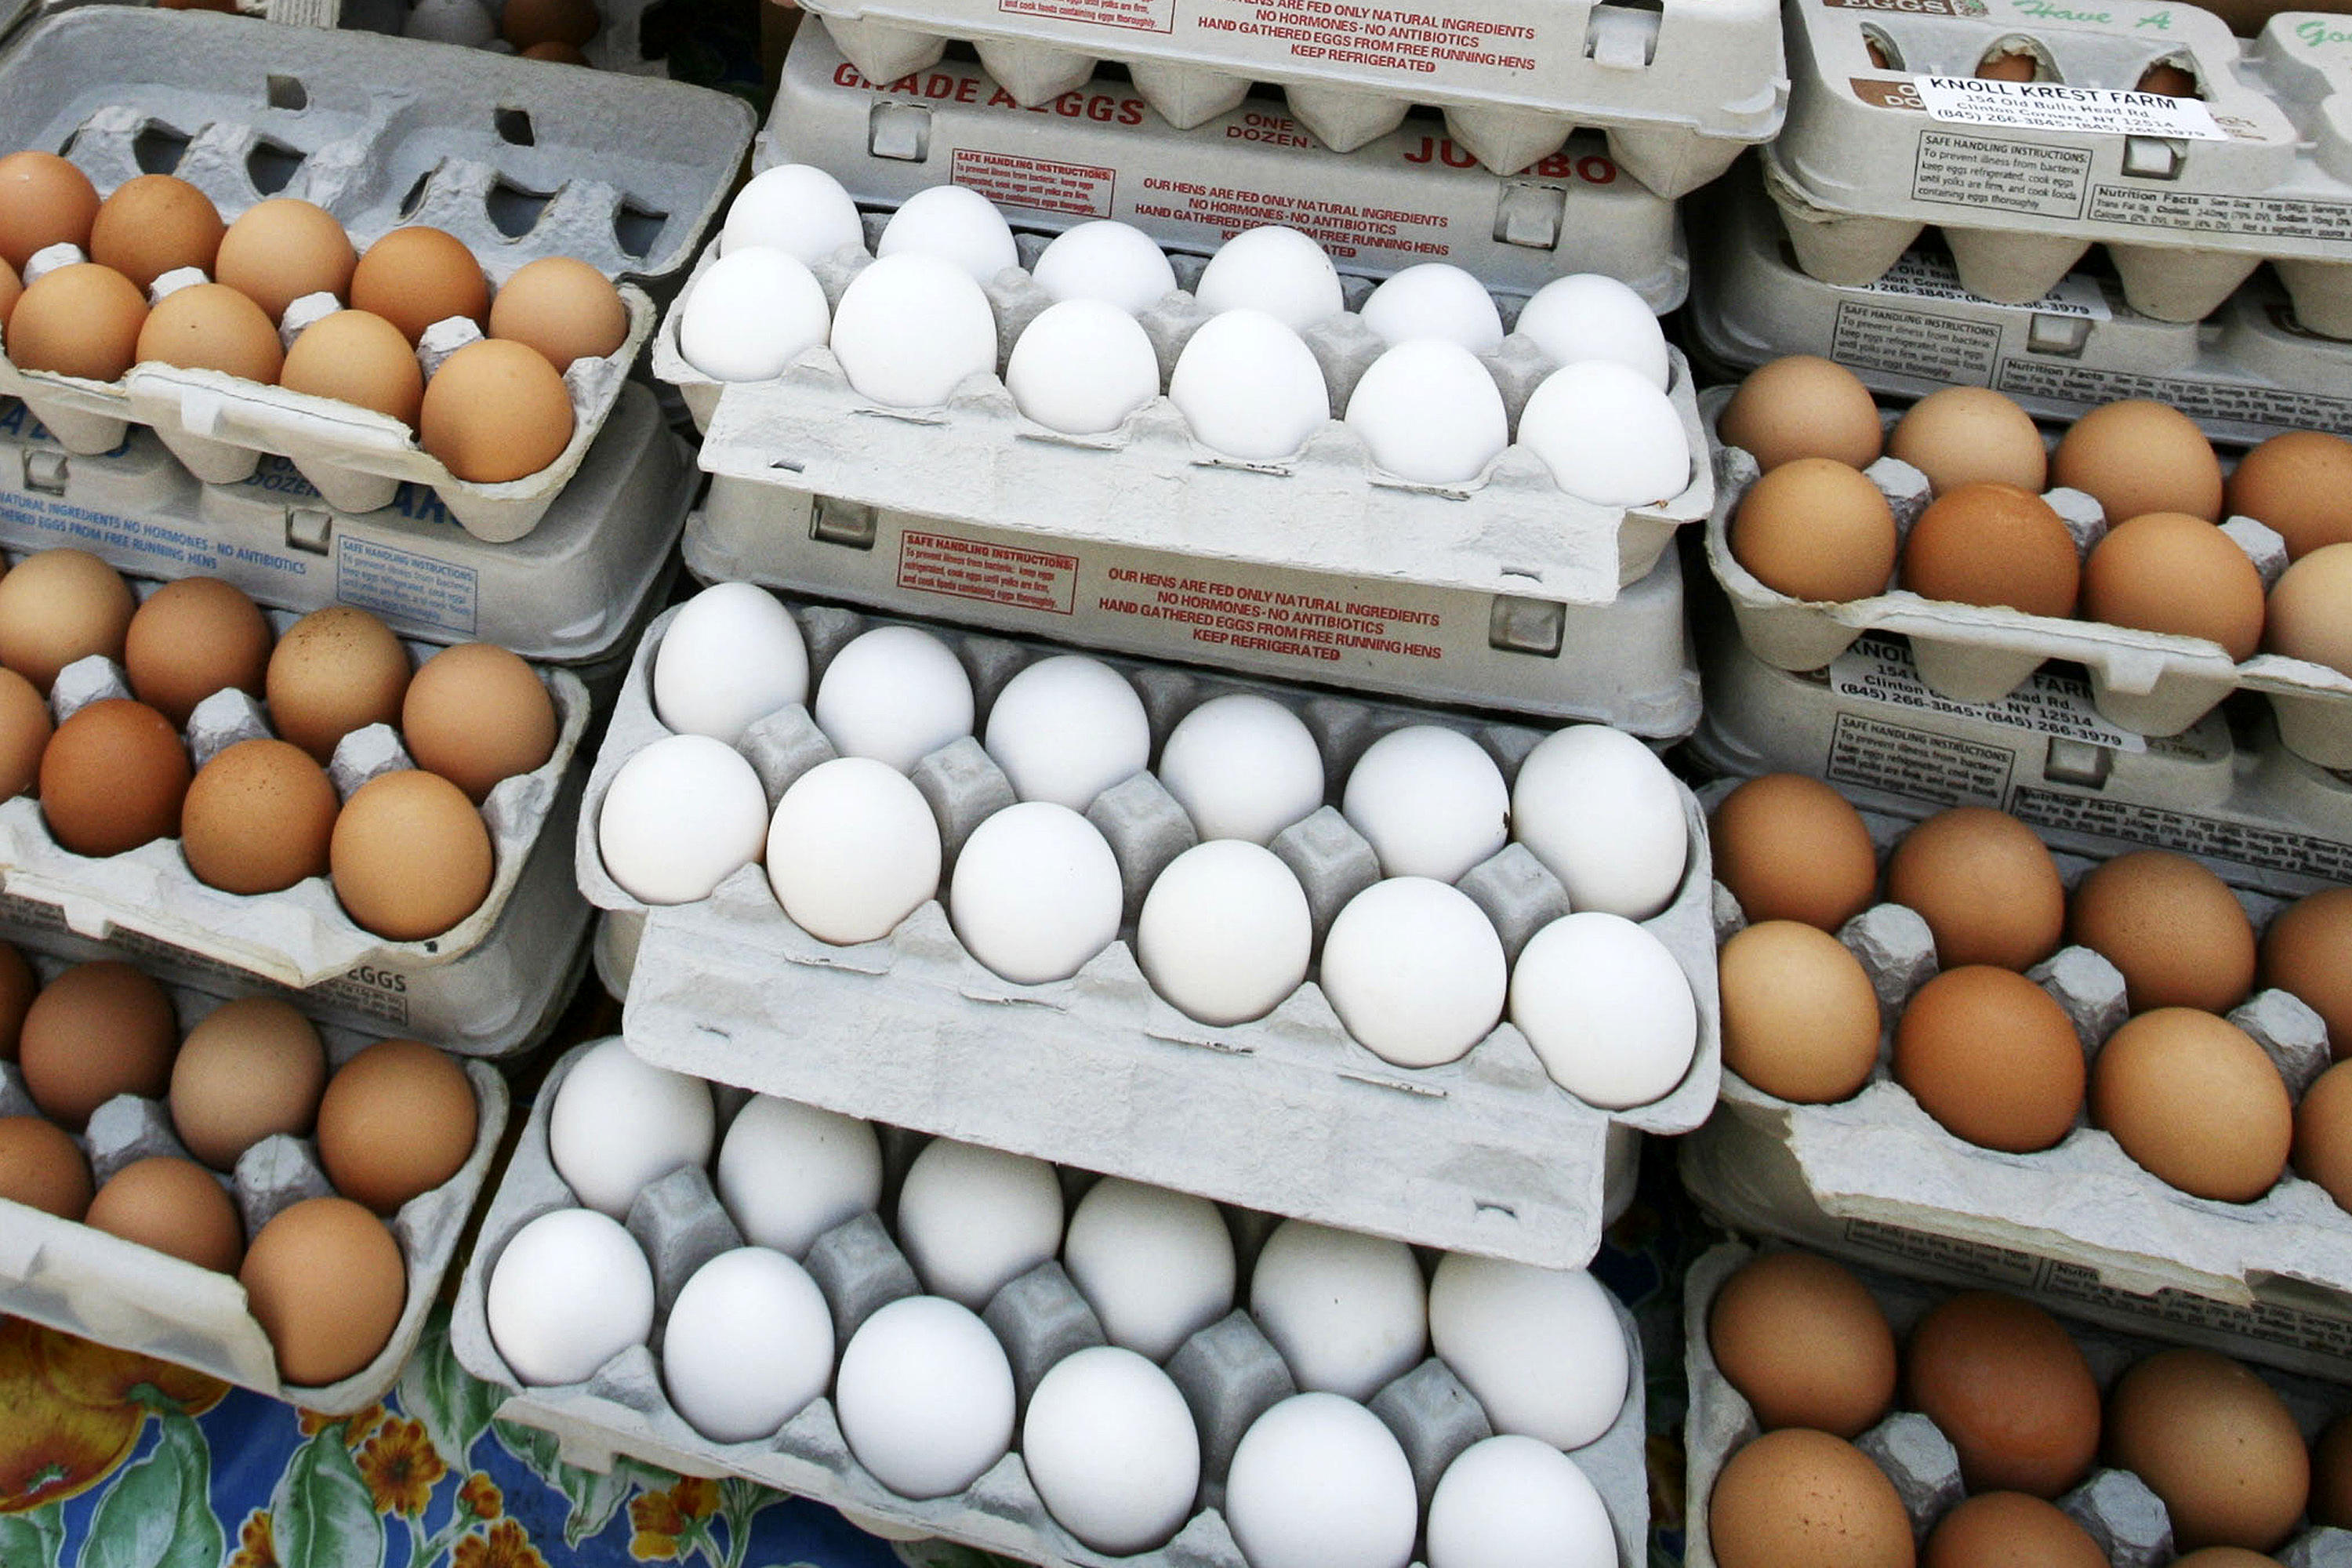 ضرر بزرگ مرغداران از فروش تخم مرغ